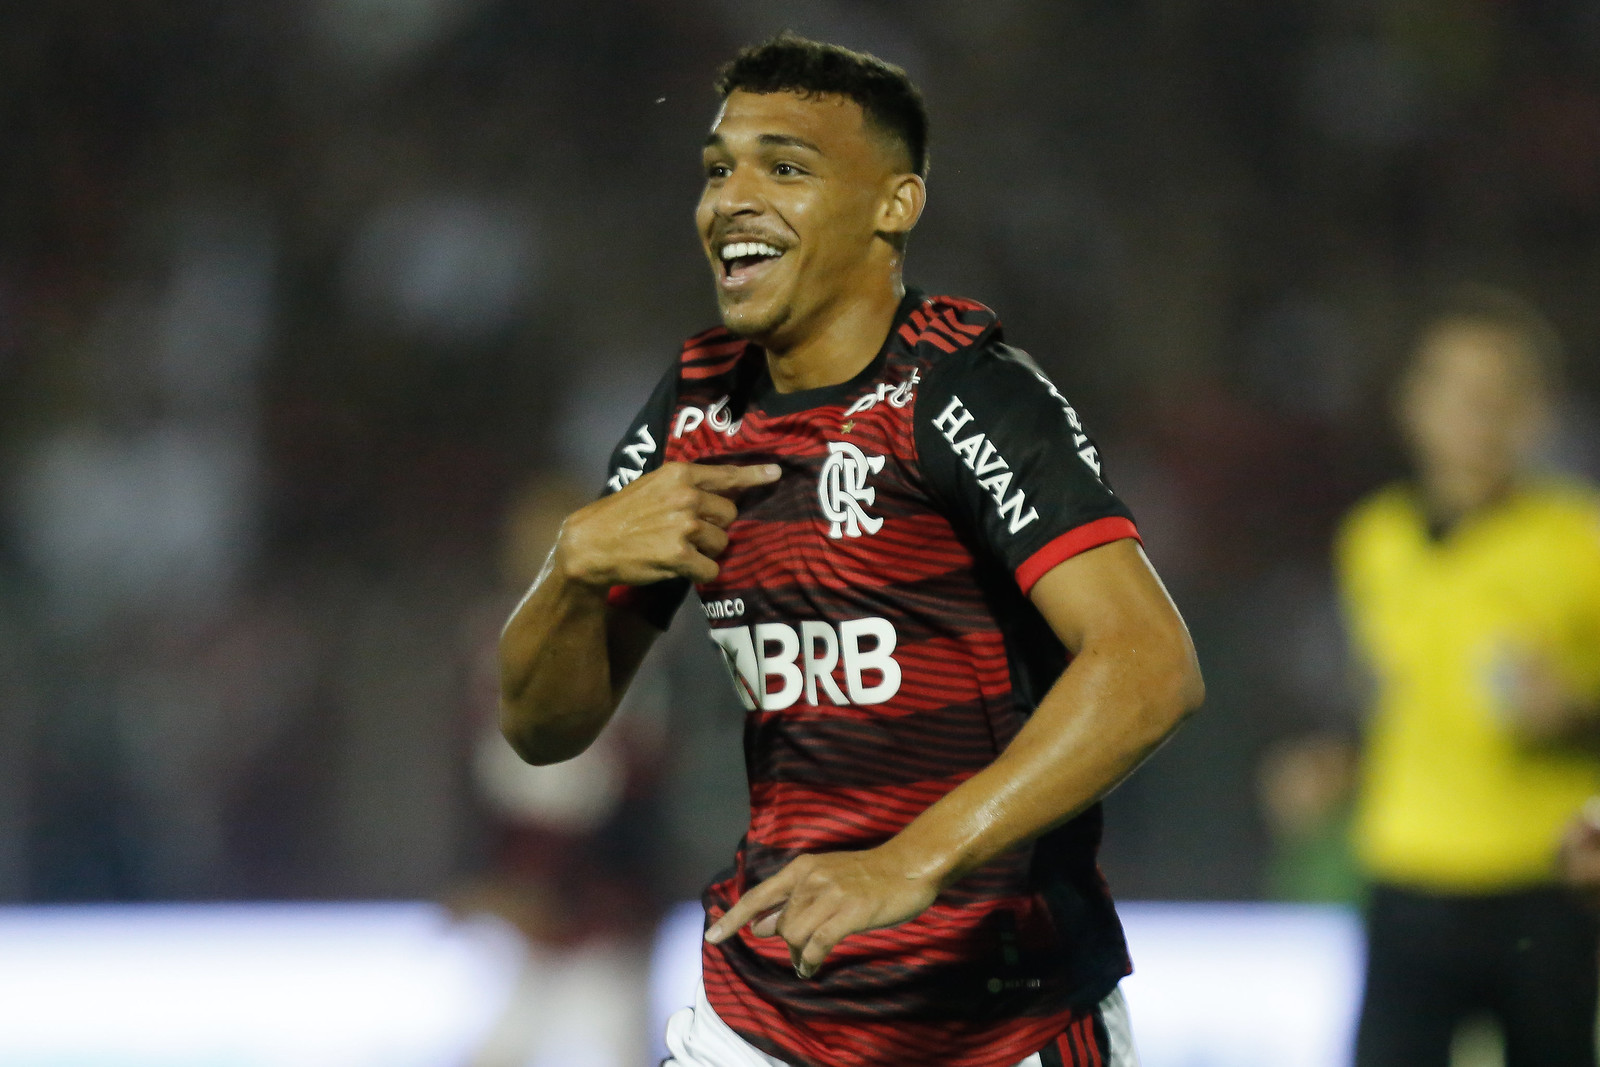 Victor Hugo celebra primeiro gol como profissional do Flamengo: 'Entre os dias mais felizes da minha vida'